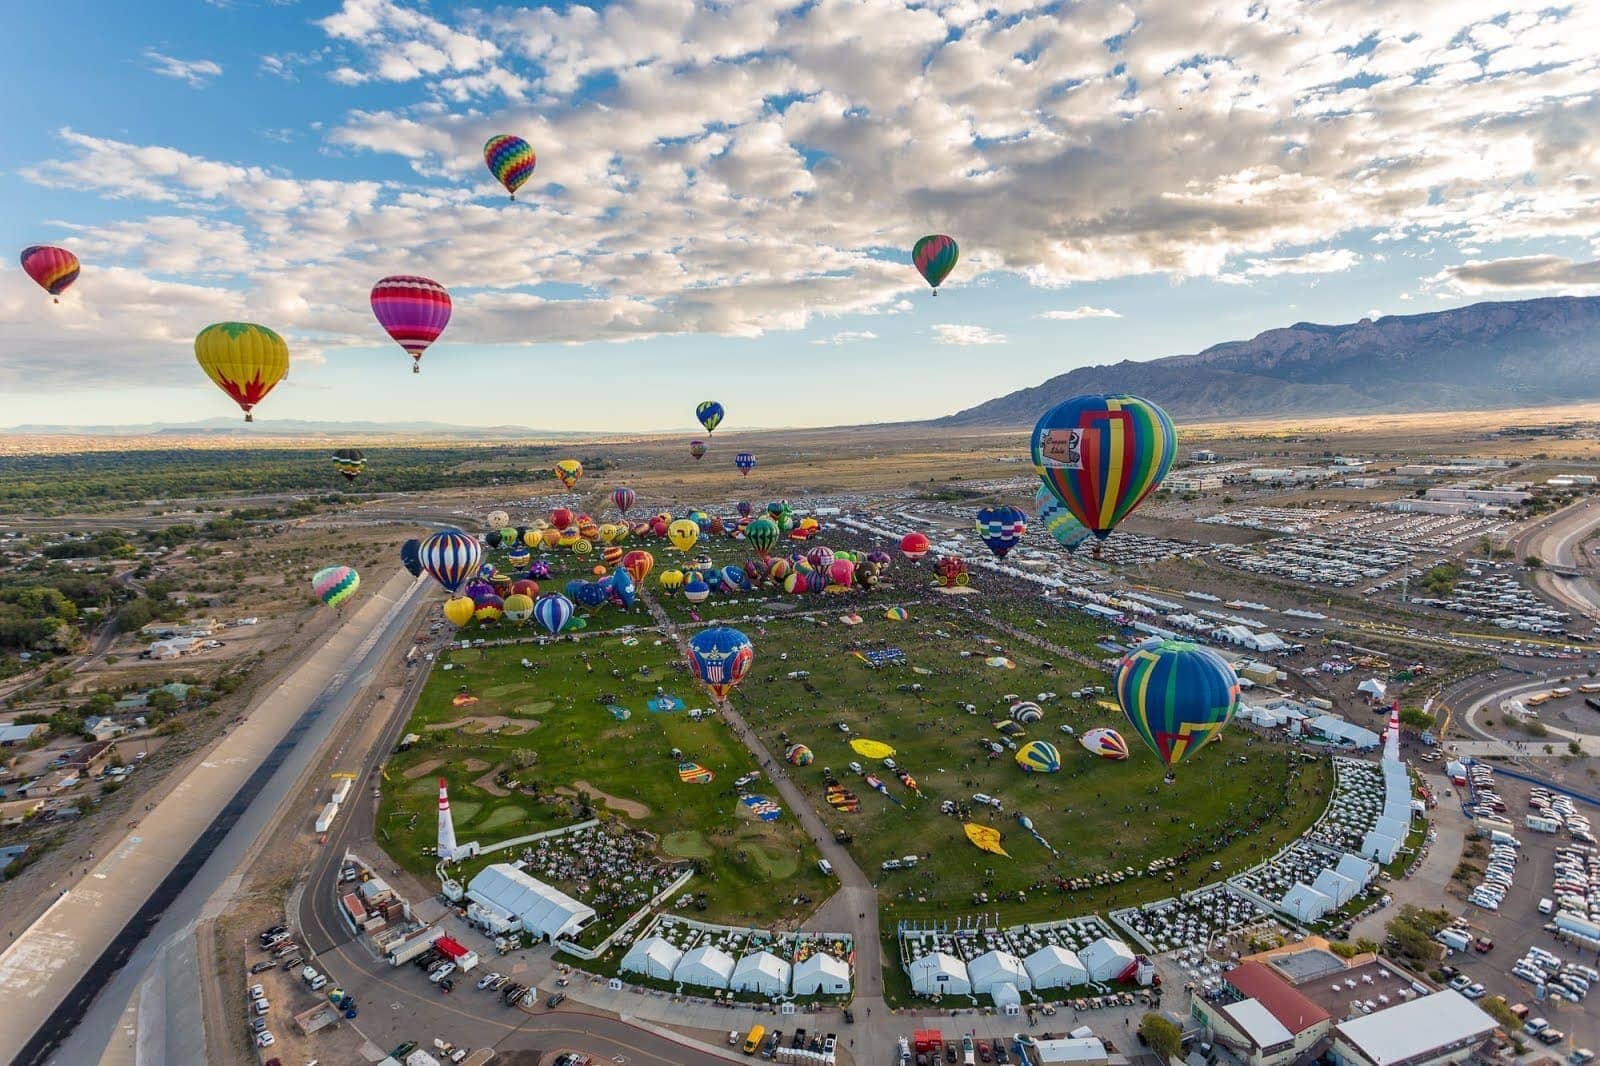 Balloon Fiesta Park in Albuquerque New Mexico